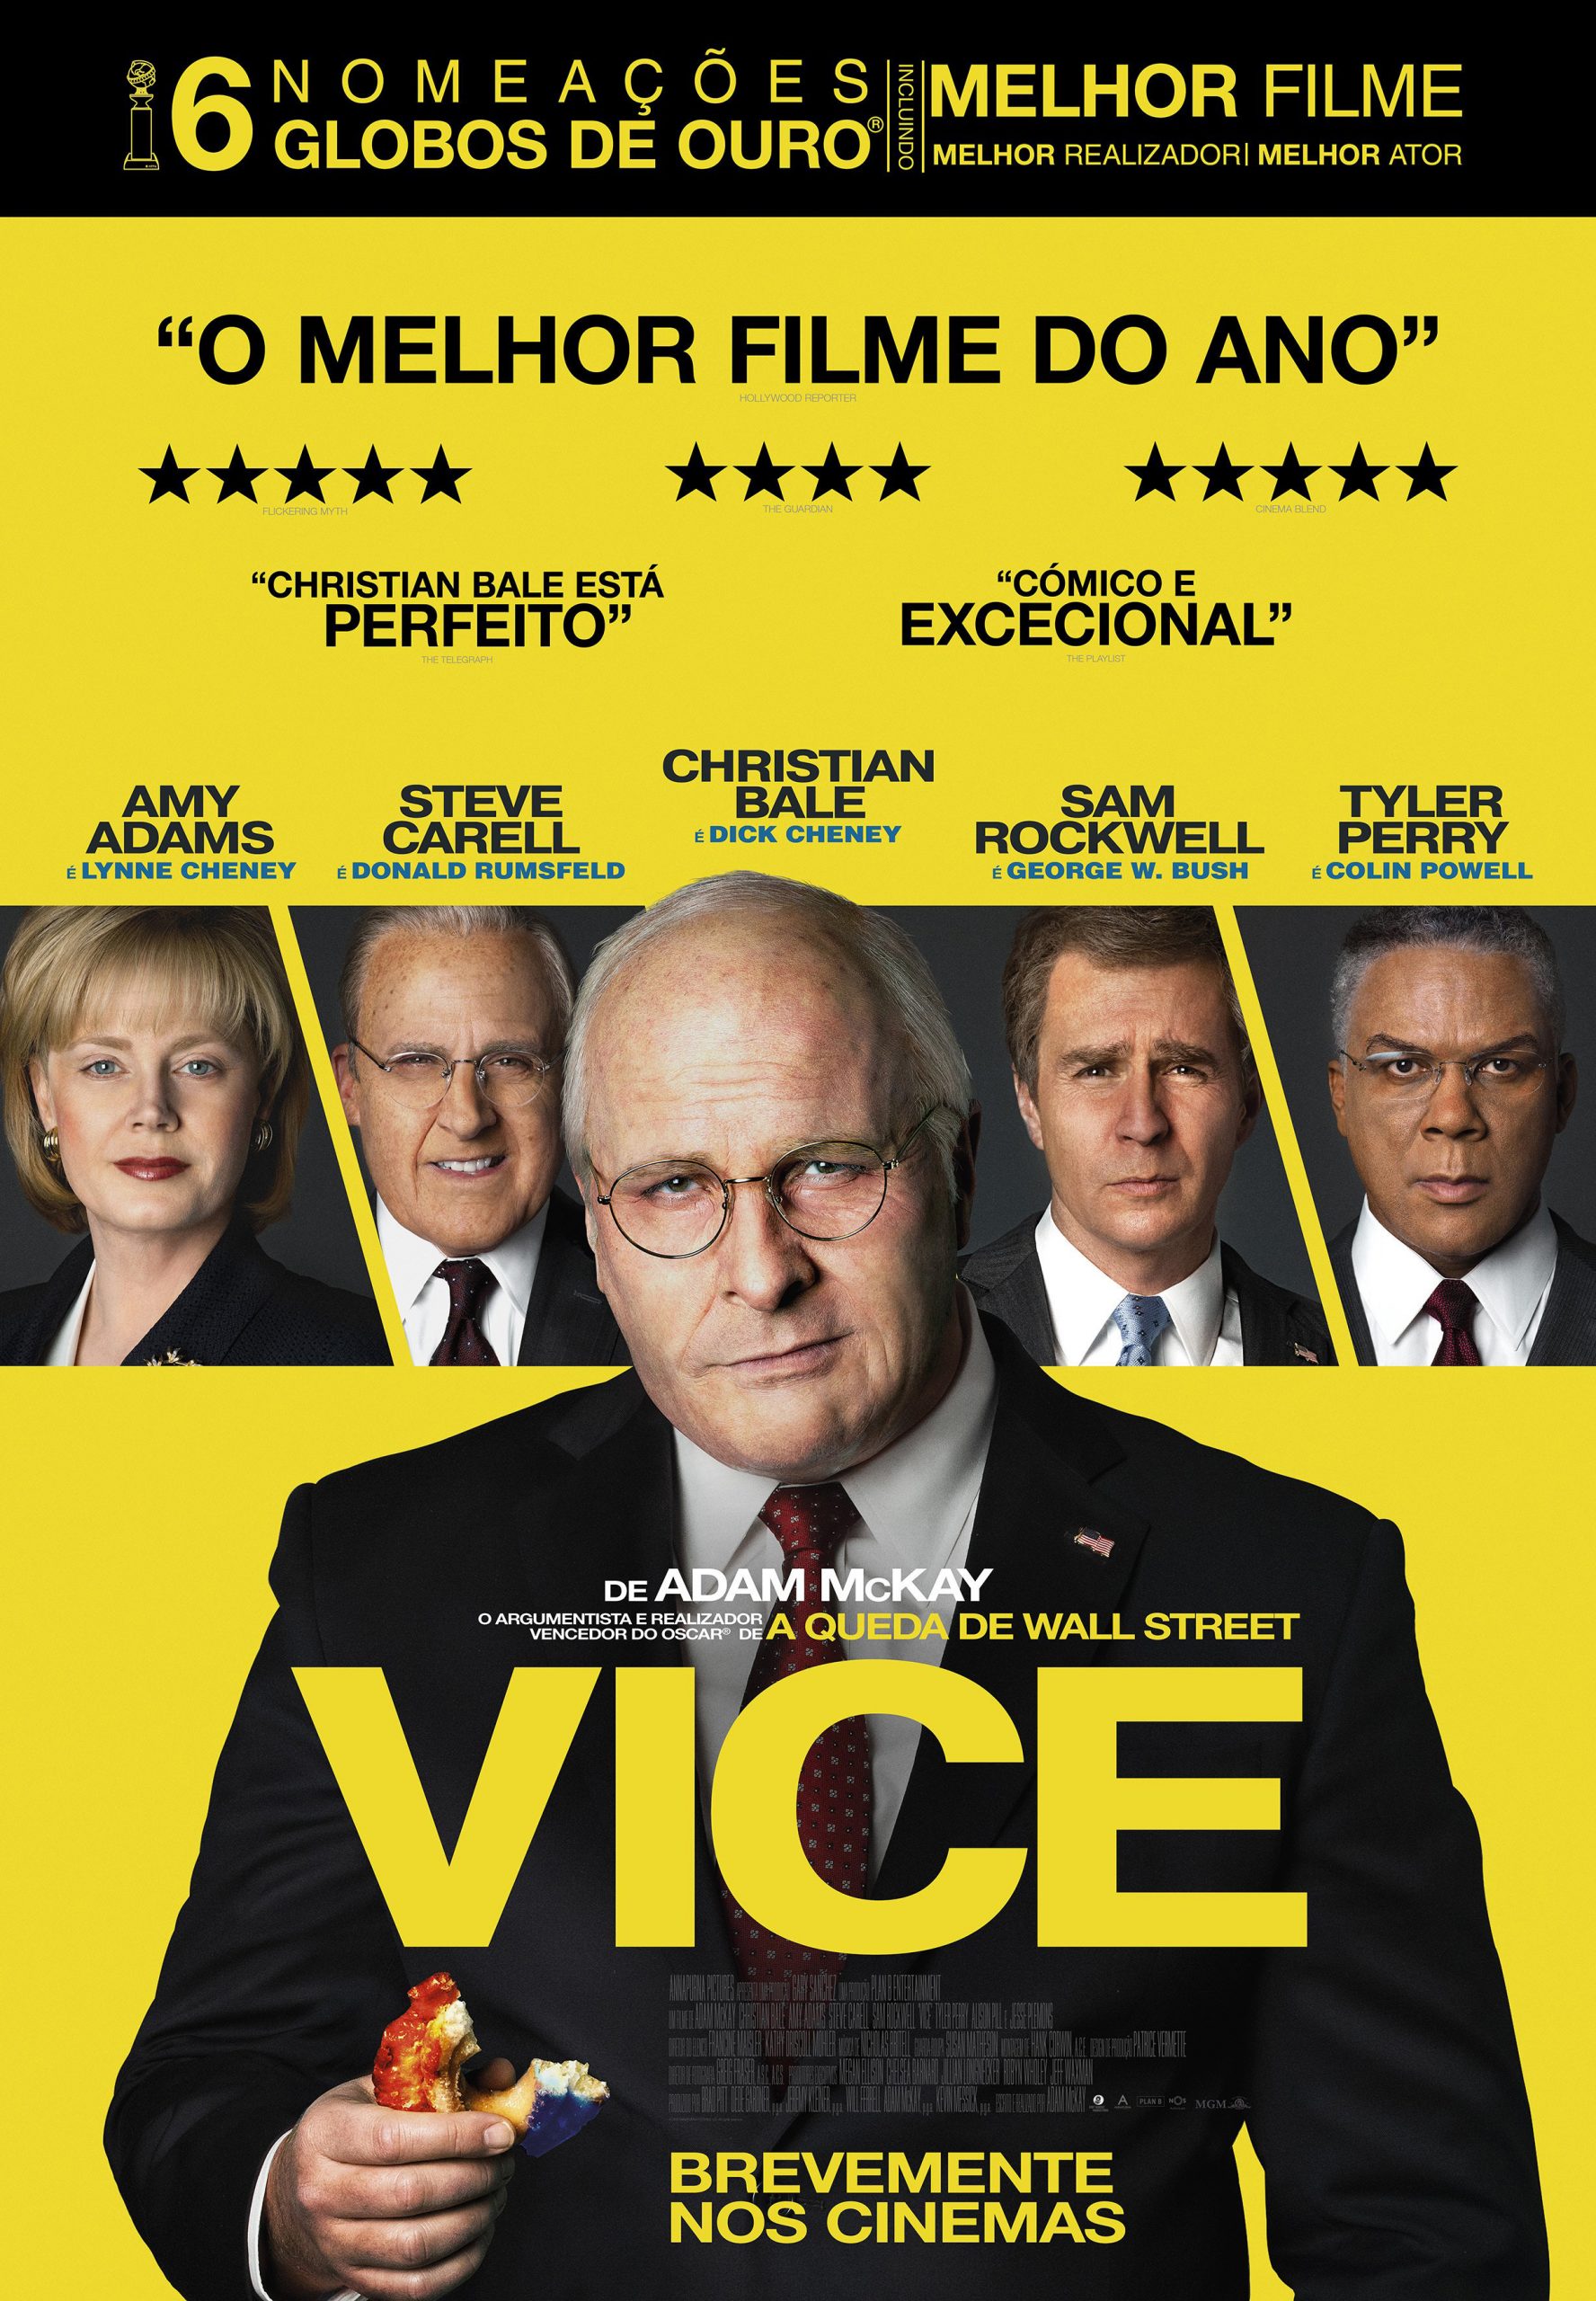 Resumo do filme Vice